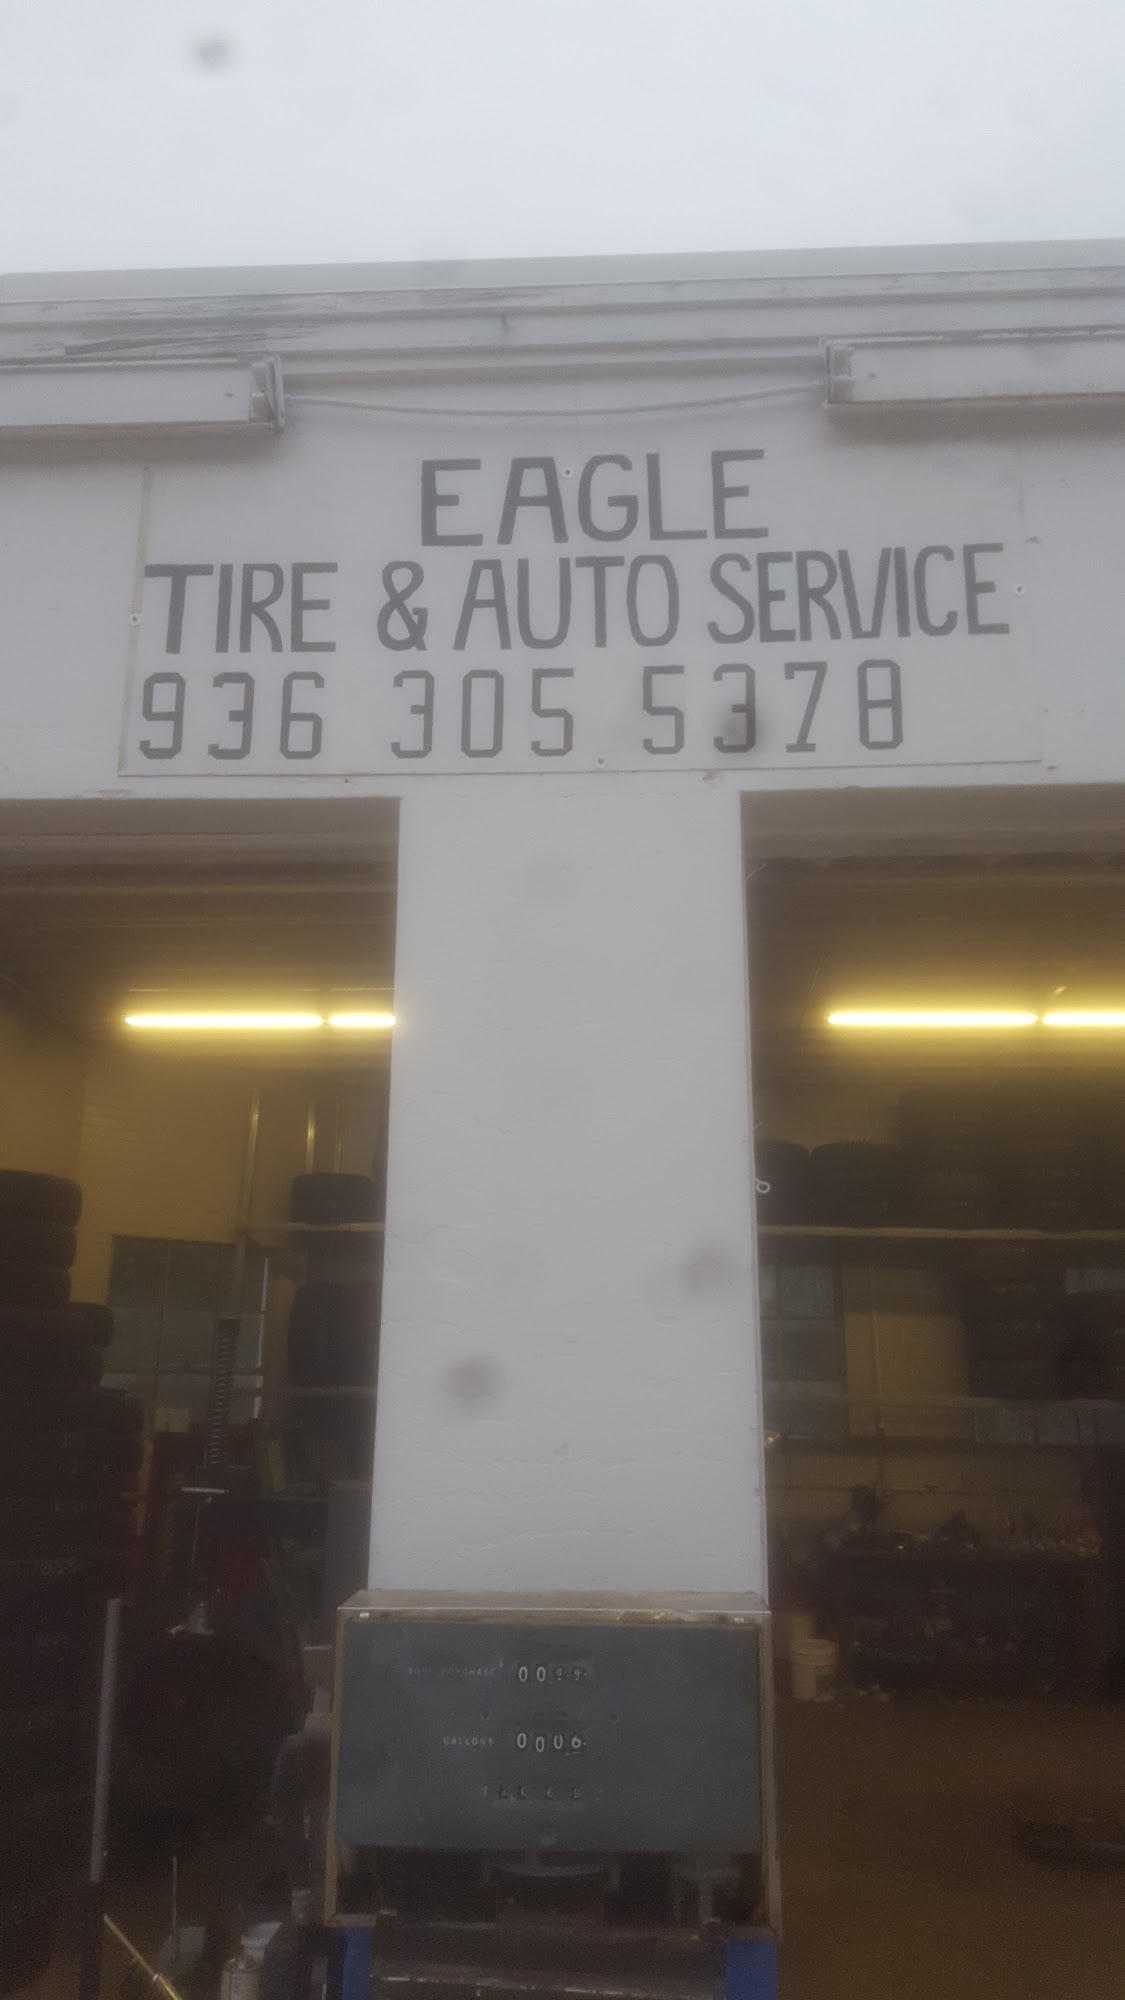 Eagle Tire & Auto Service